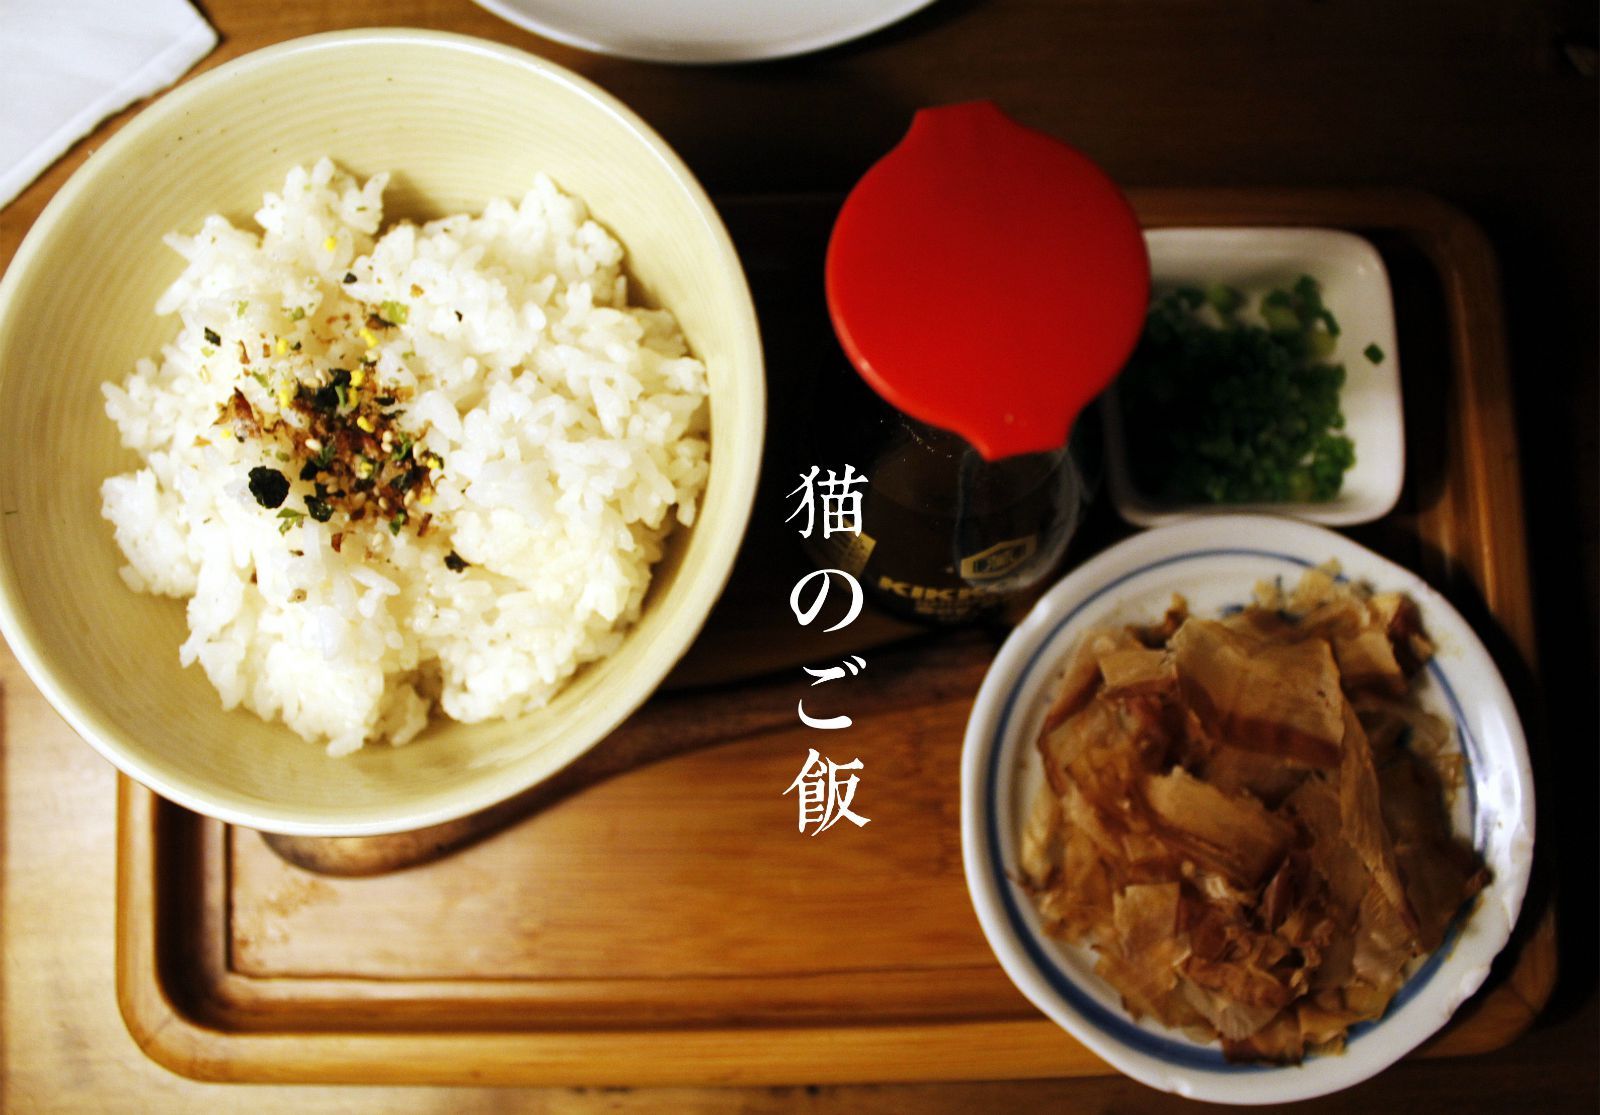 昆明日语培训梓润教育为你介绍日本料理美味的